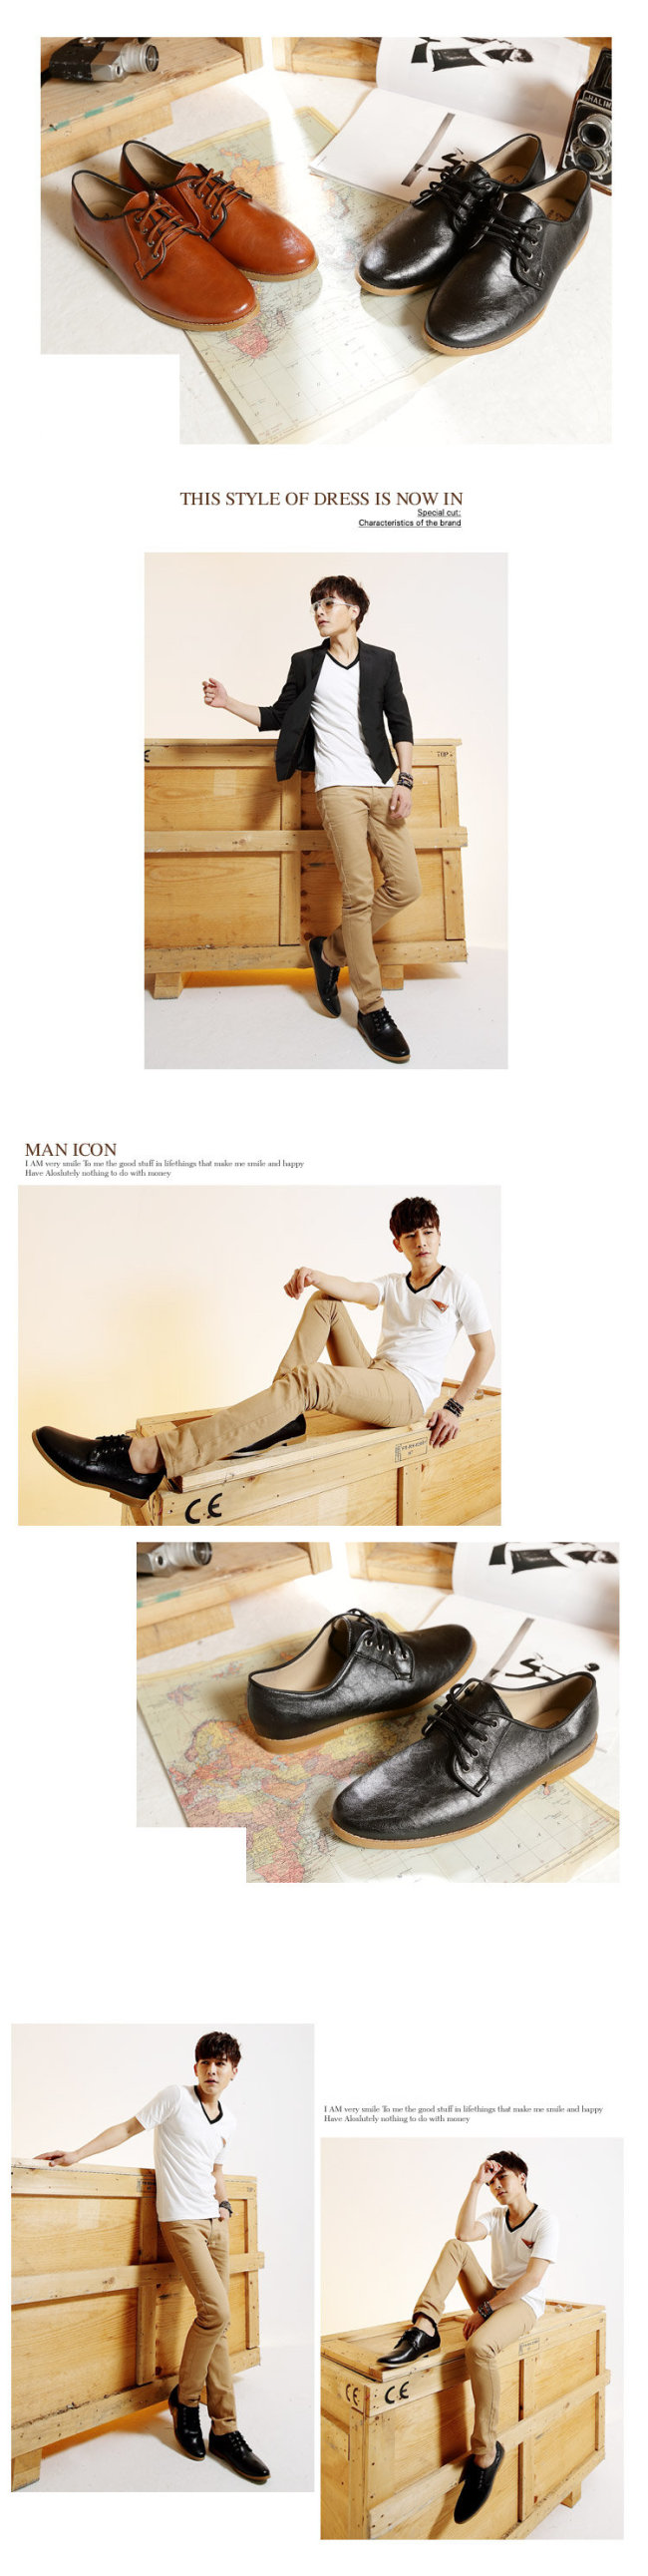 BuyGlasses 韓國人氣紳士綁帶黑邊皮鞋-棕